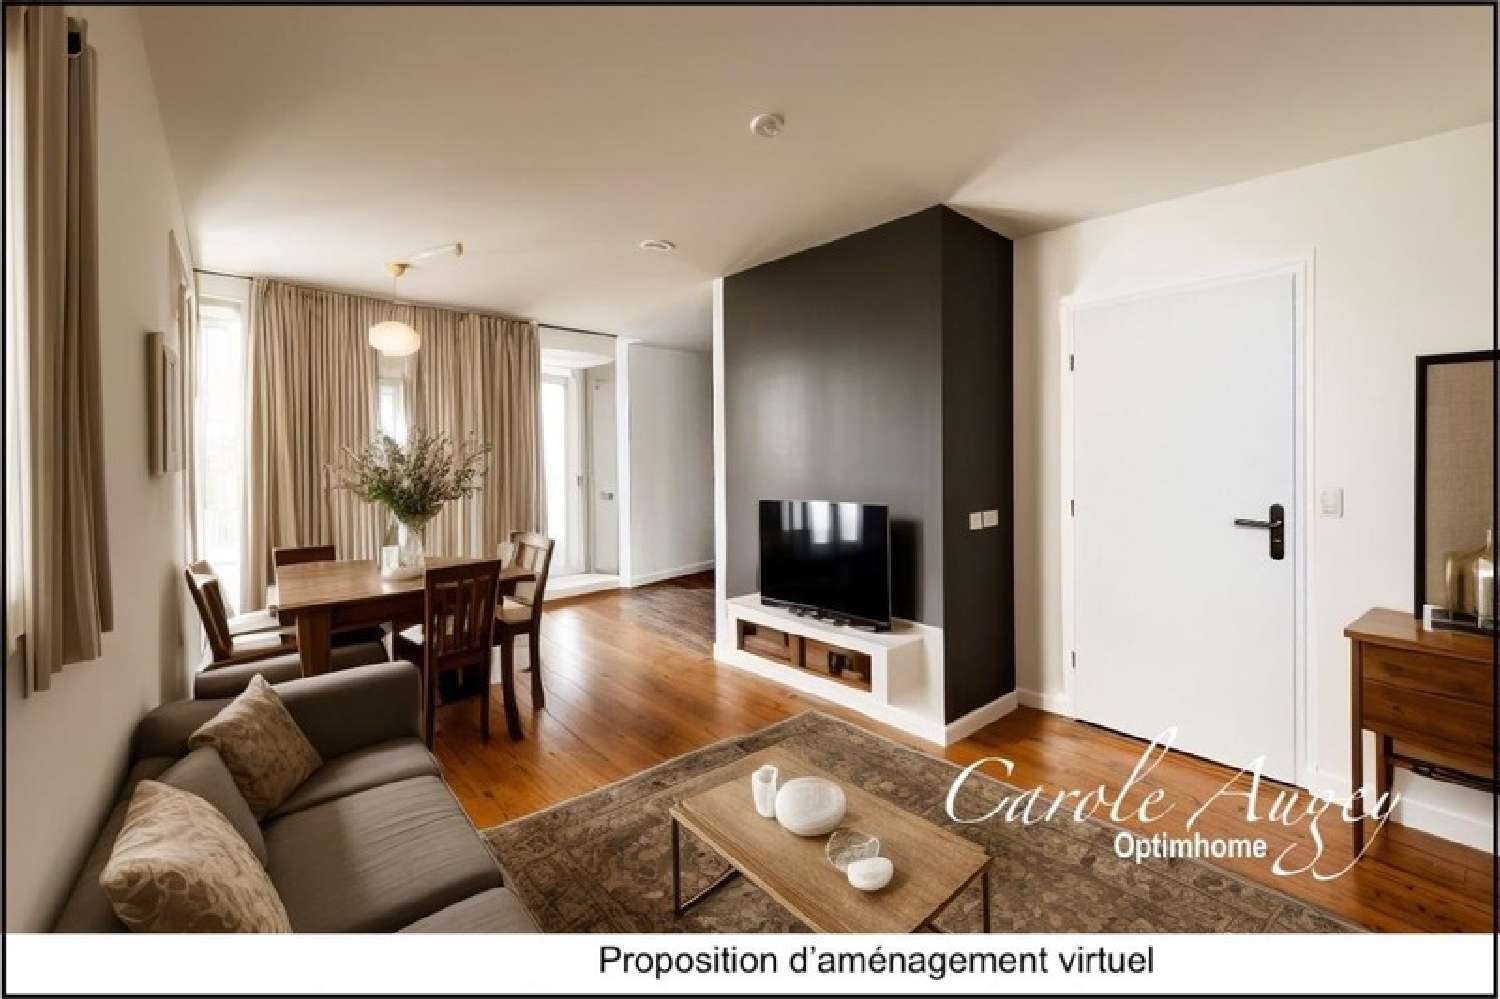  à vendre appartement Villandraut Gironde 1